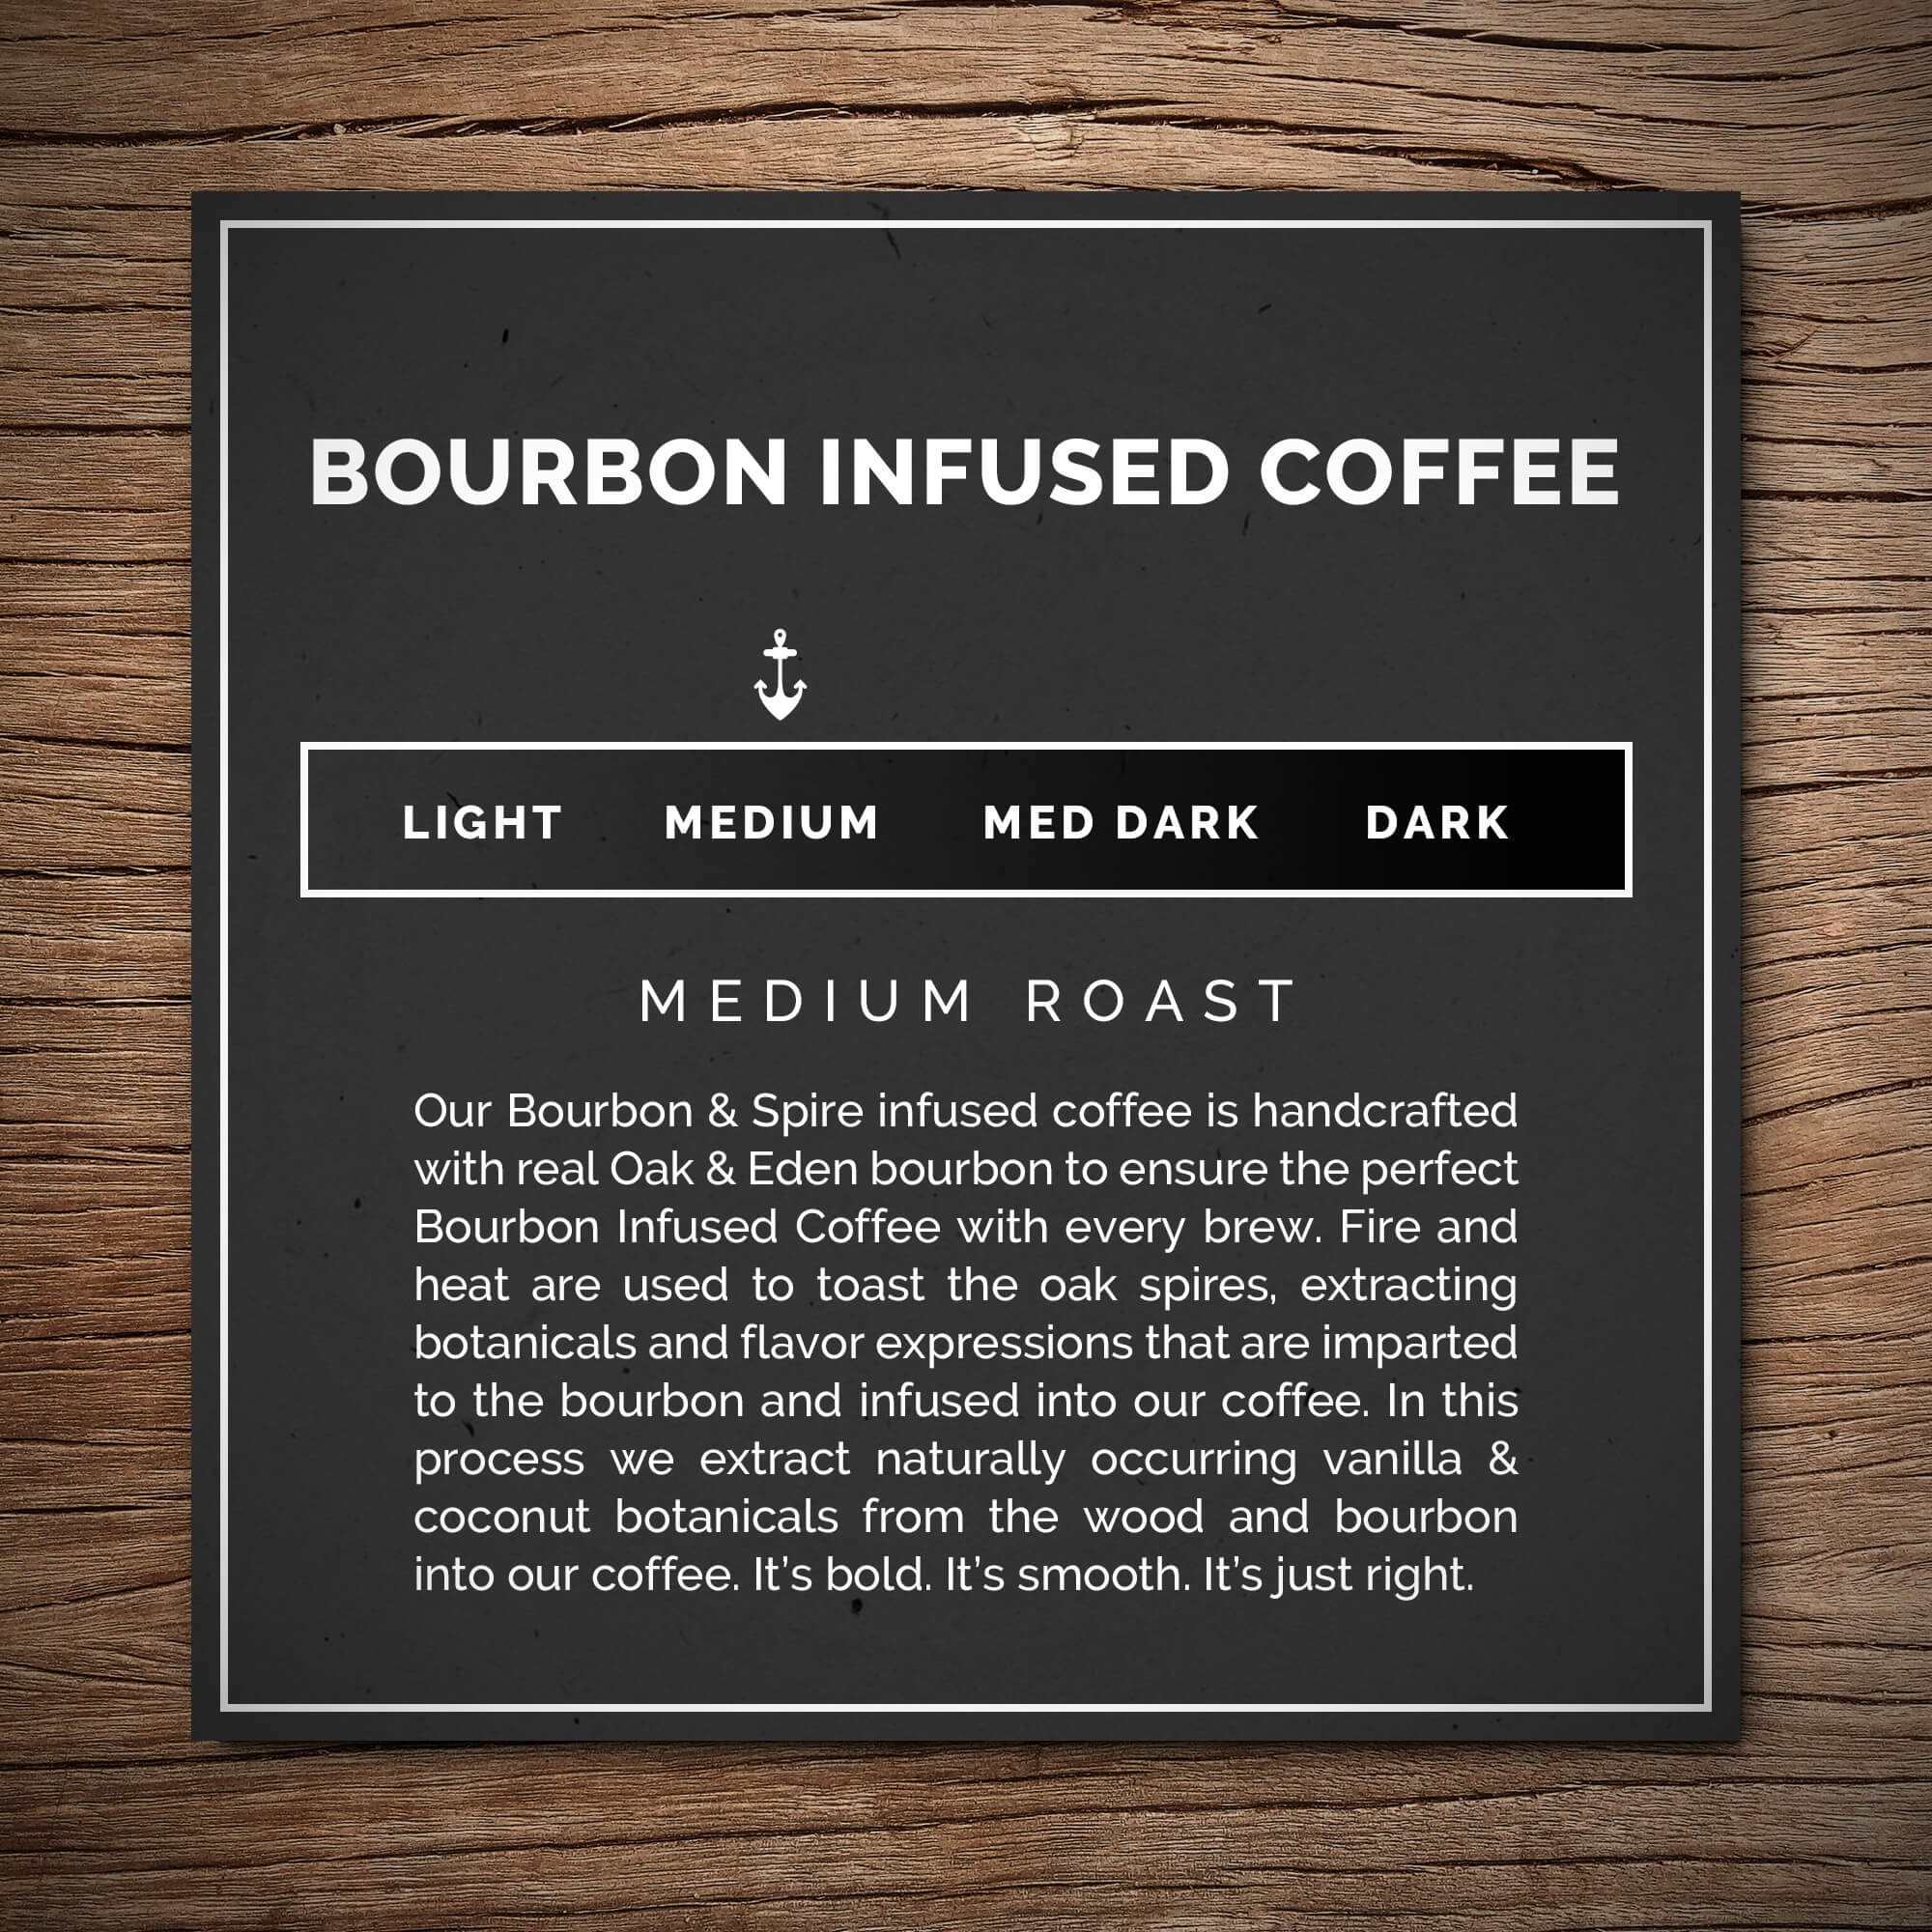 Bourbon Coffee Starter Pack ( 3 x 12oz Oak & Eden Bourbon Infused Coffee)